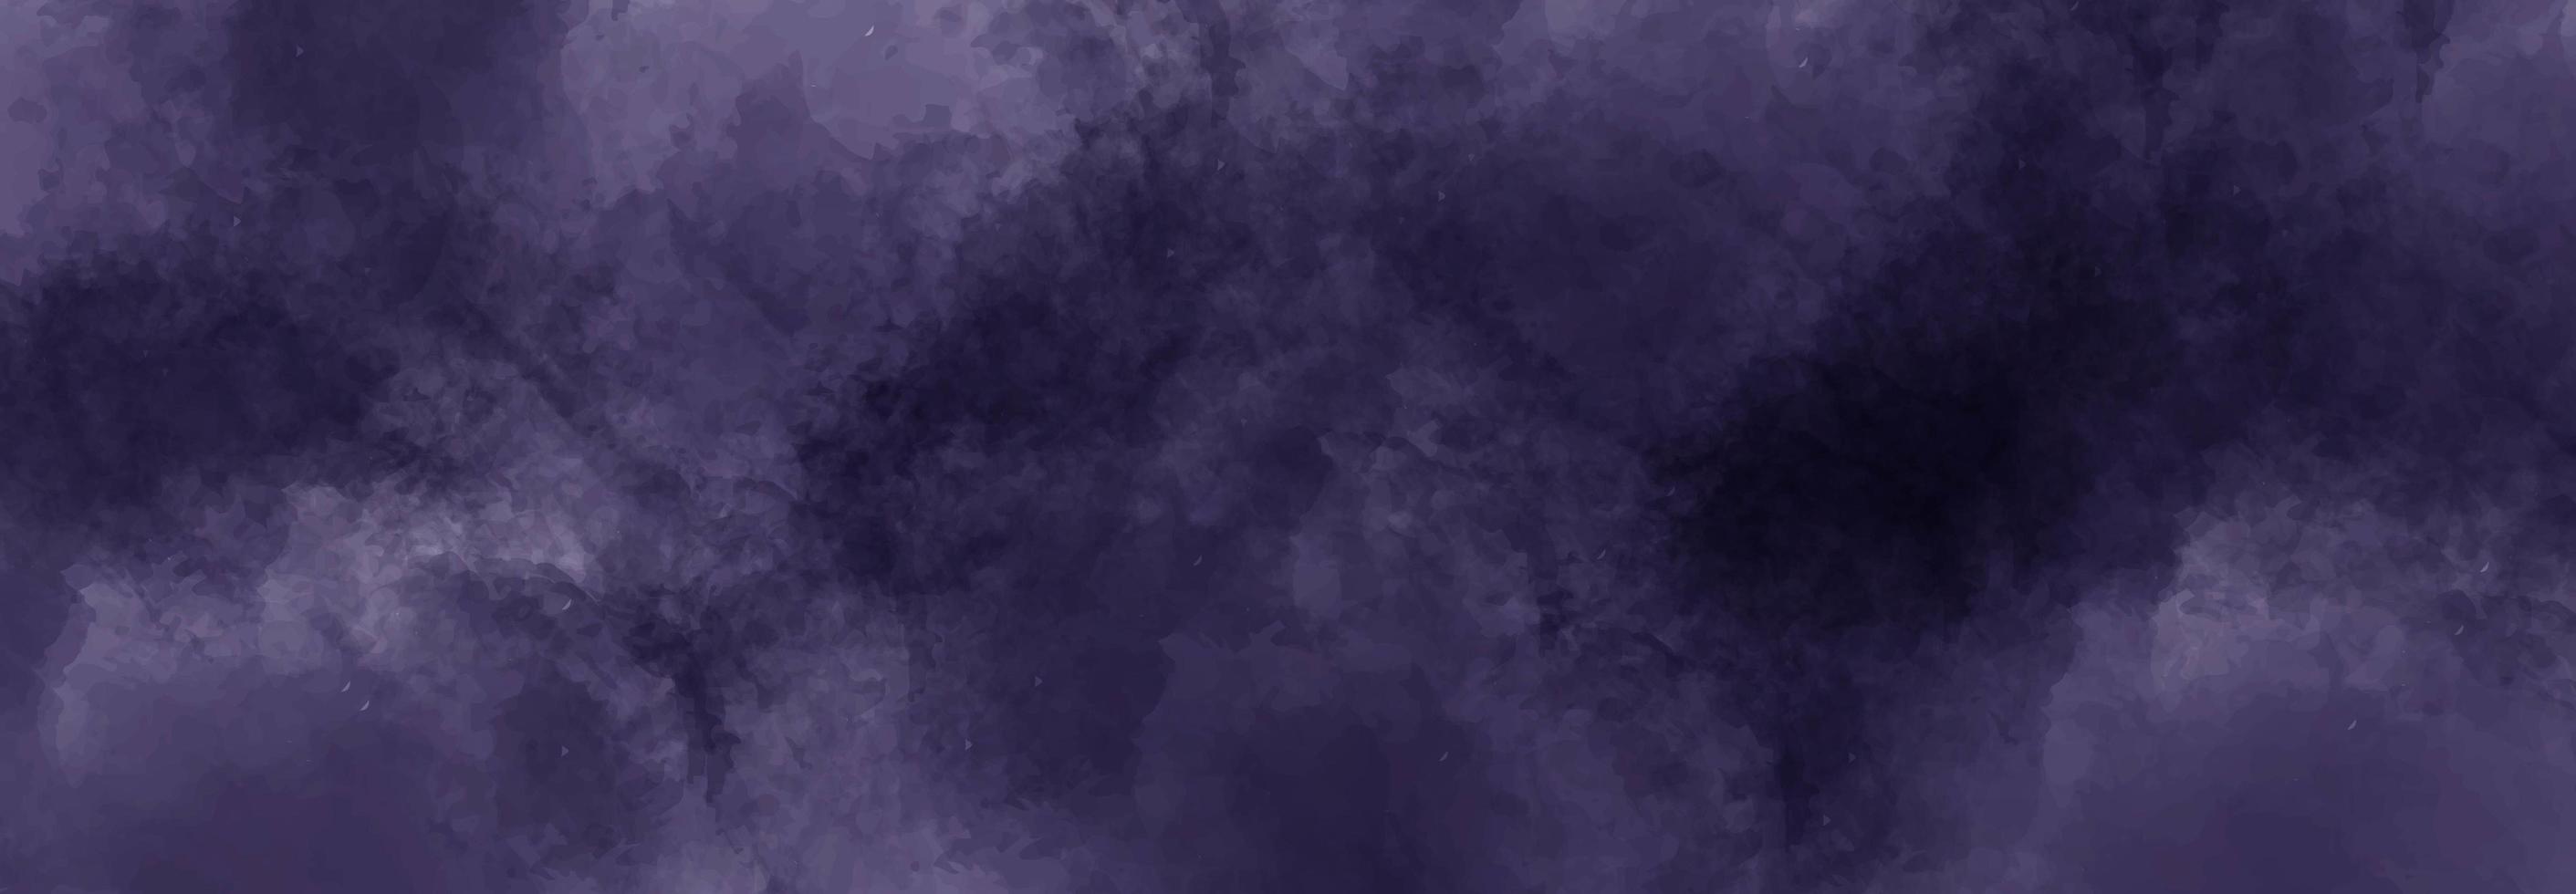 sfondo astratto acquerello viola scuro foto